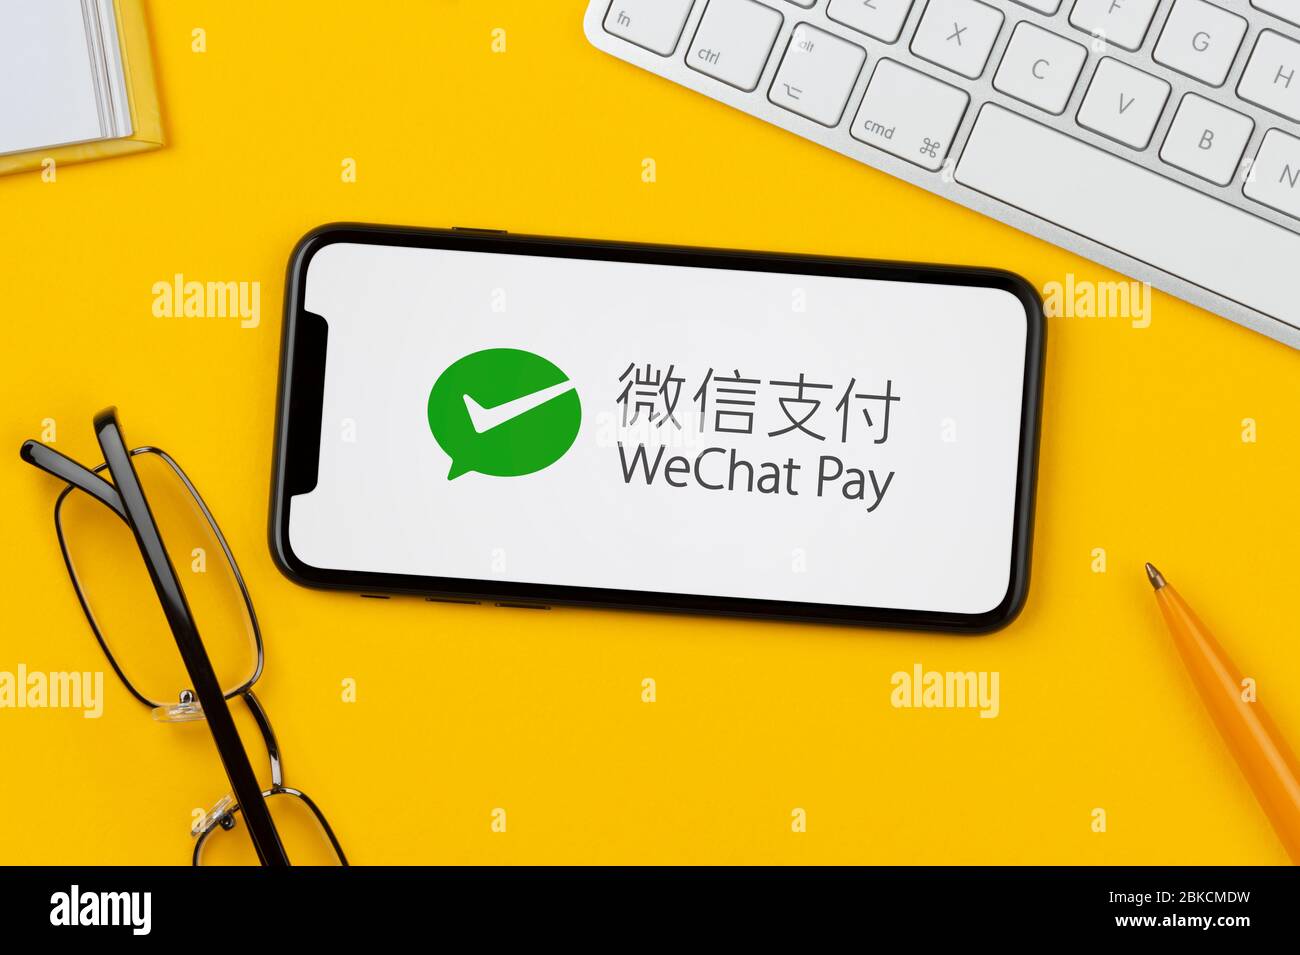 Uno smartphone con il logo WeChat Pay è posizionato su uno sfondo giallo insieme a tastiera, occhiali, penna e libro (solo per uso editoriale). Foto Stock